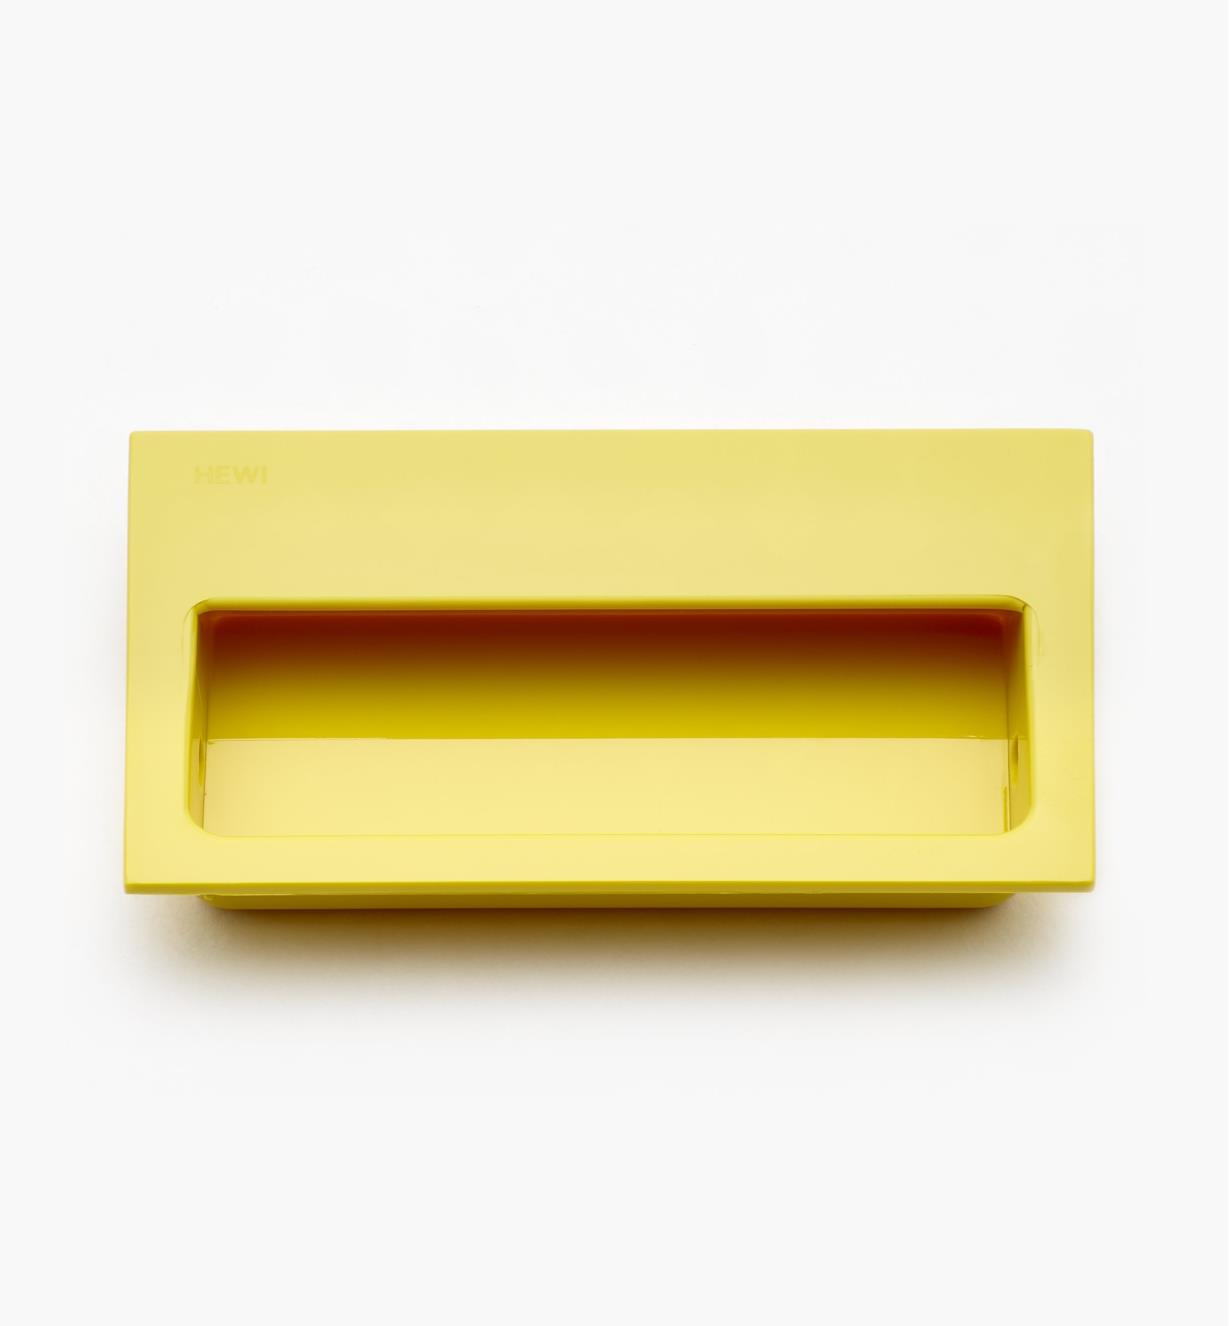 01W4107 - 100mm x 60mm Bin/Door Pull - Yellow